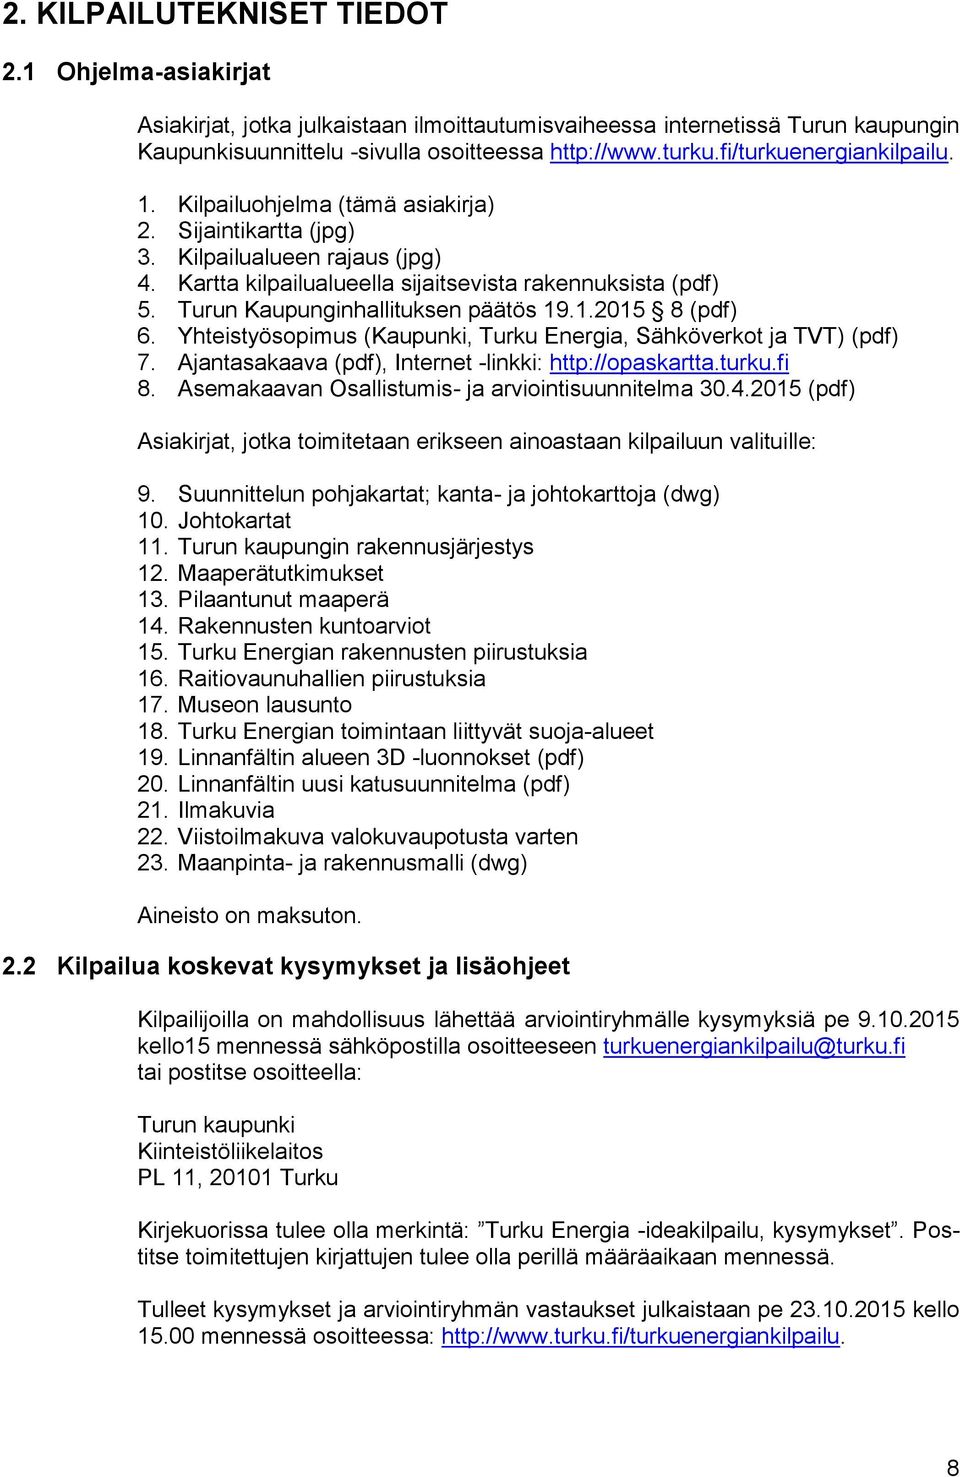 Turun Kaupunginhallituksen päätös 19.1.2015 8 (pdf) 6. Yhteistyösopimus (Kaupunki, Turku Energia, Sähköverkot ja TVT) (pdf) 7. Ajantasakaava (pdf), Internet -linkki: http://opaskartta.turku.fi 8.